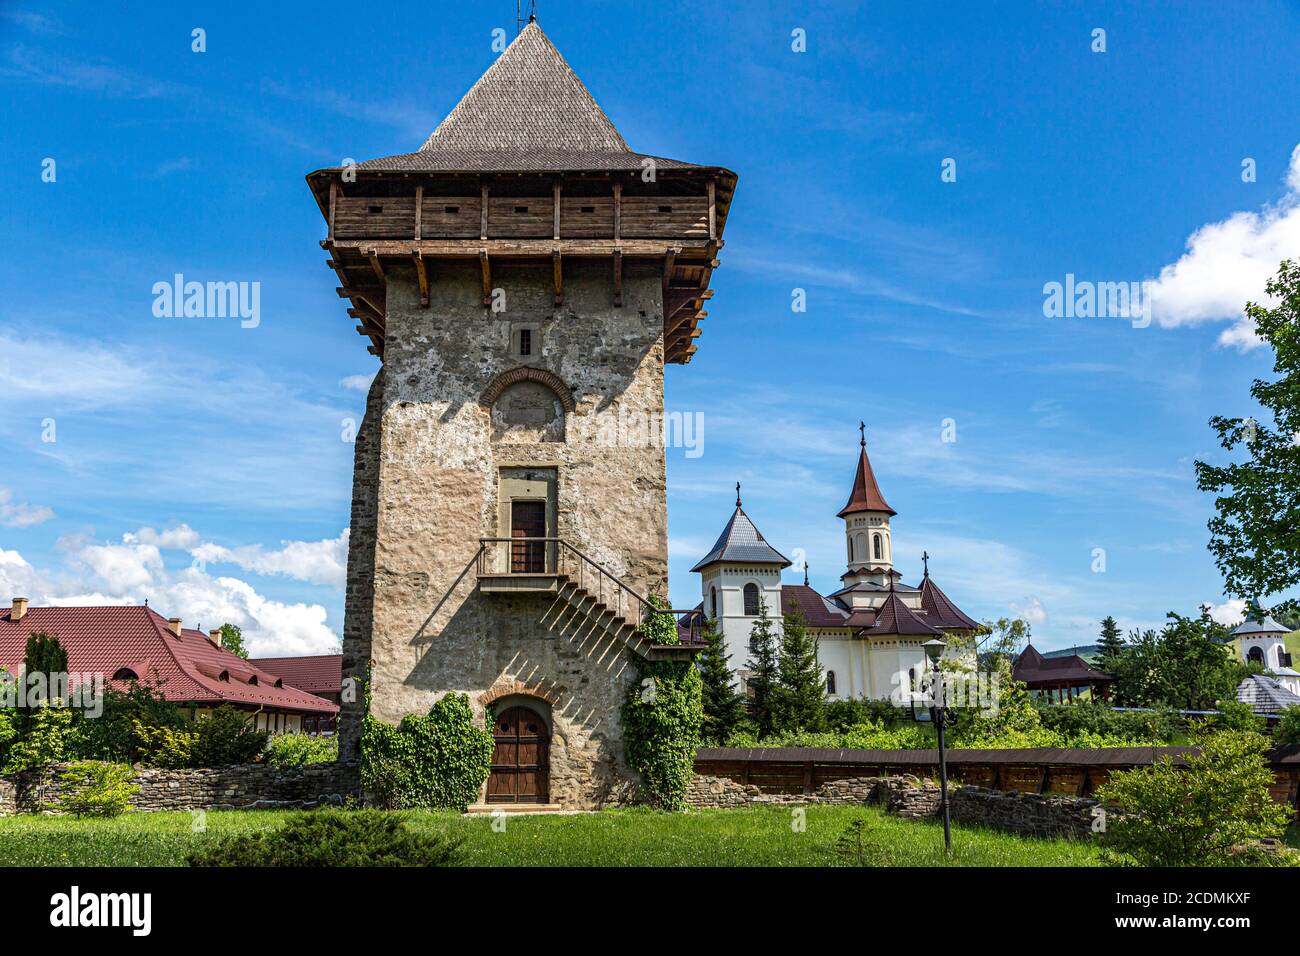 La antigua torre de vigilancia del Monasterio de Humor en el fondo el nuevo Monasterio de Humor, Humor, Rumania Foto de stock